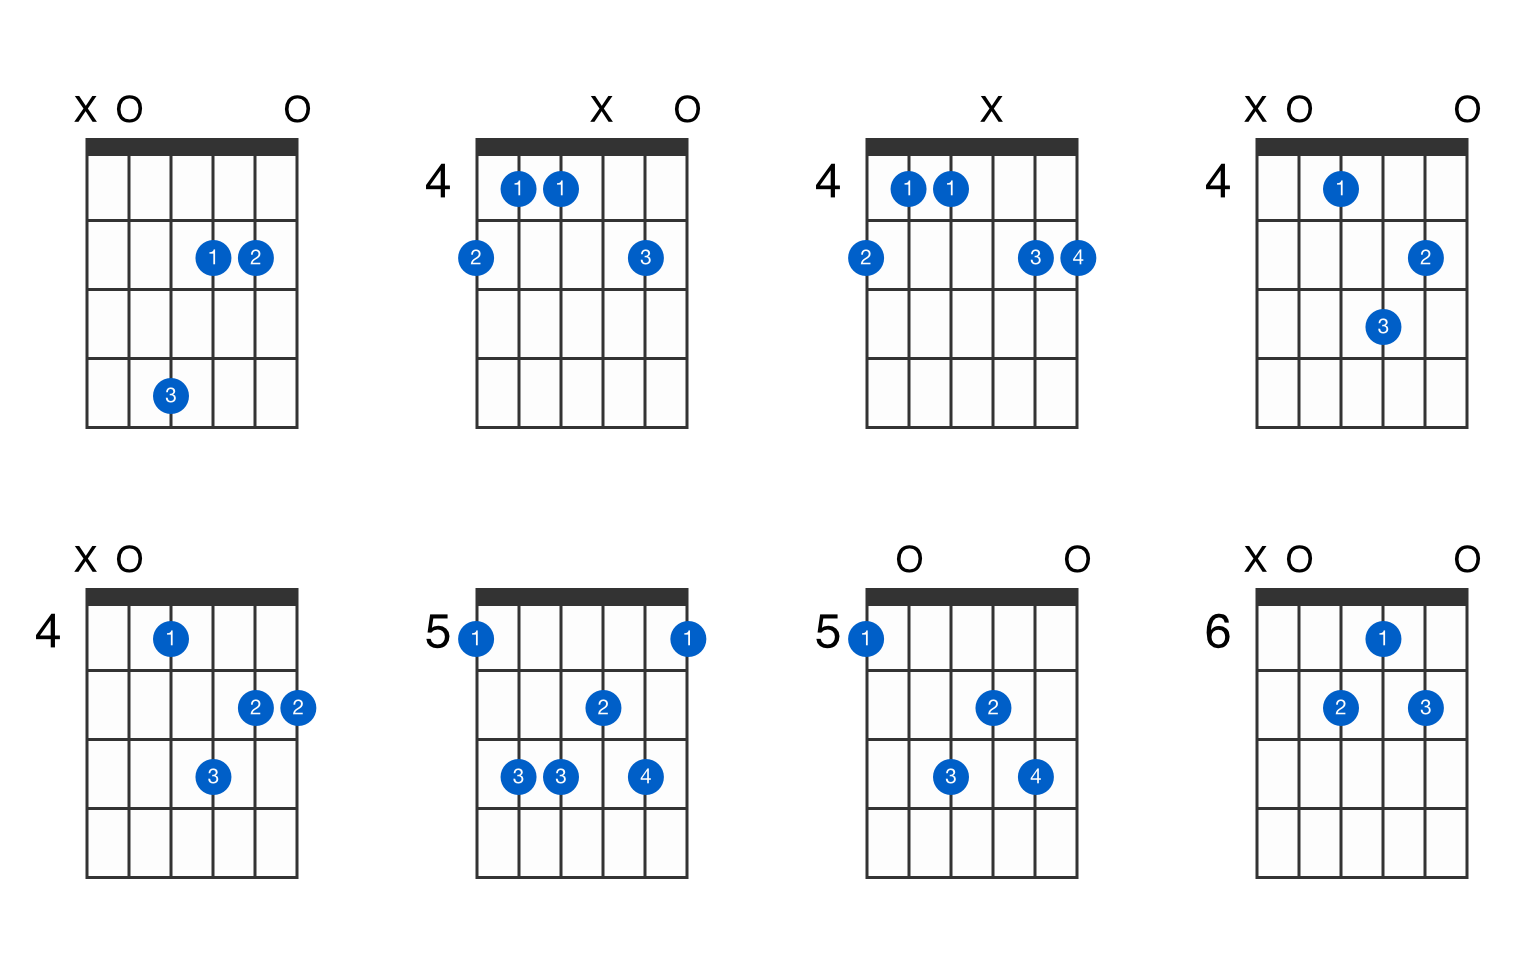 A6 guitar chord - GtrLib Chords.